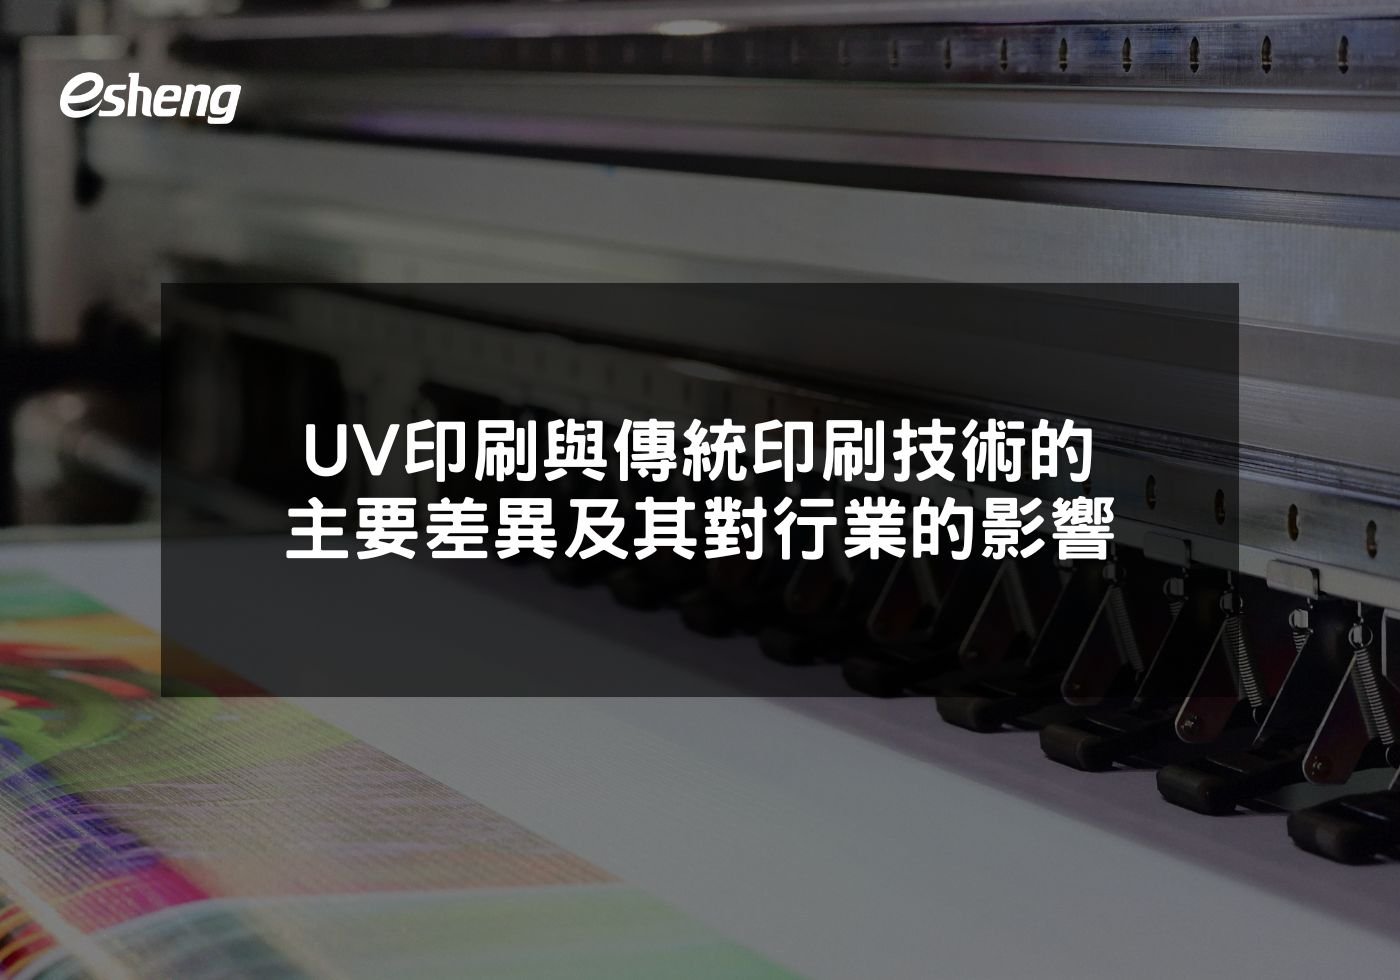 您目前正在查看 UV印刷與傳統印刷技術的主要差異及其對行業的影響